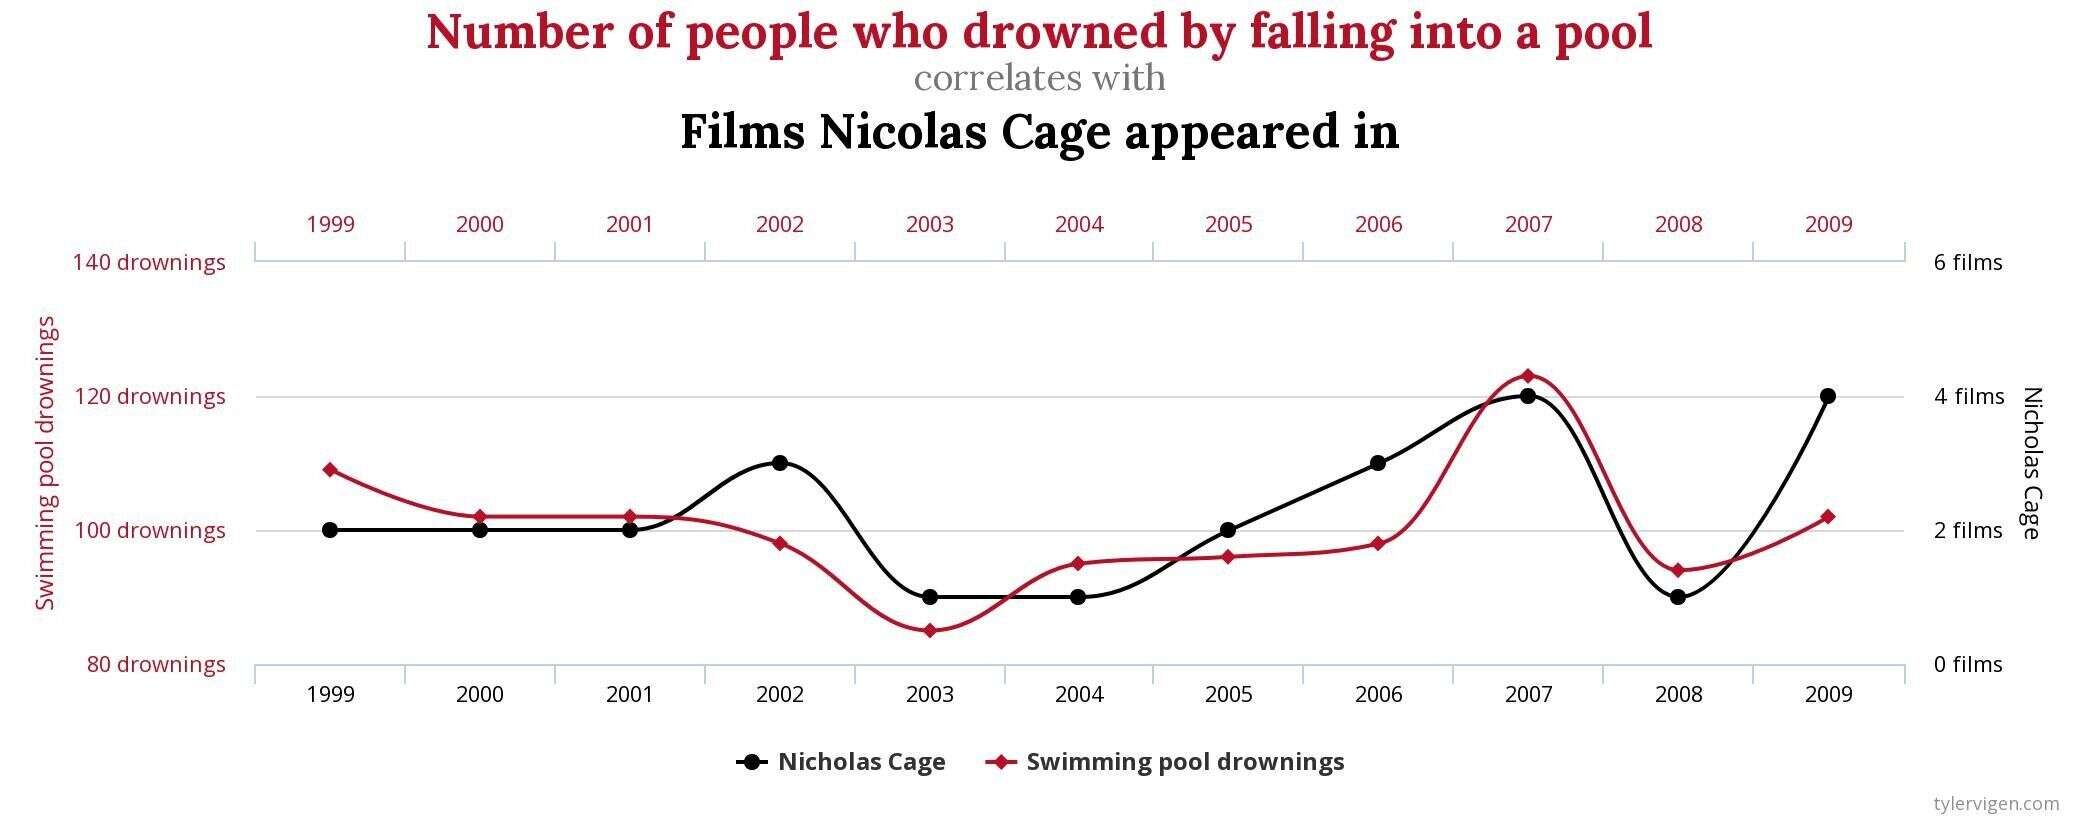 Nicolas Cage et les morts par noyade, une corrélation possible?